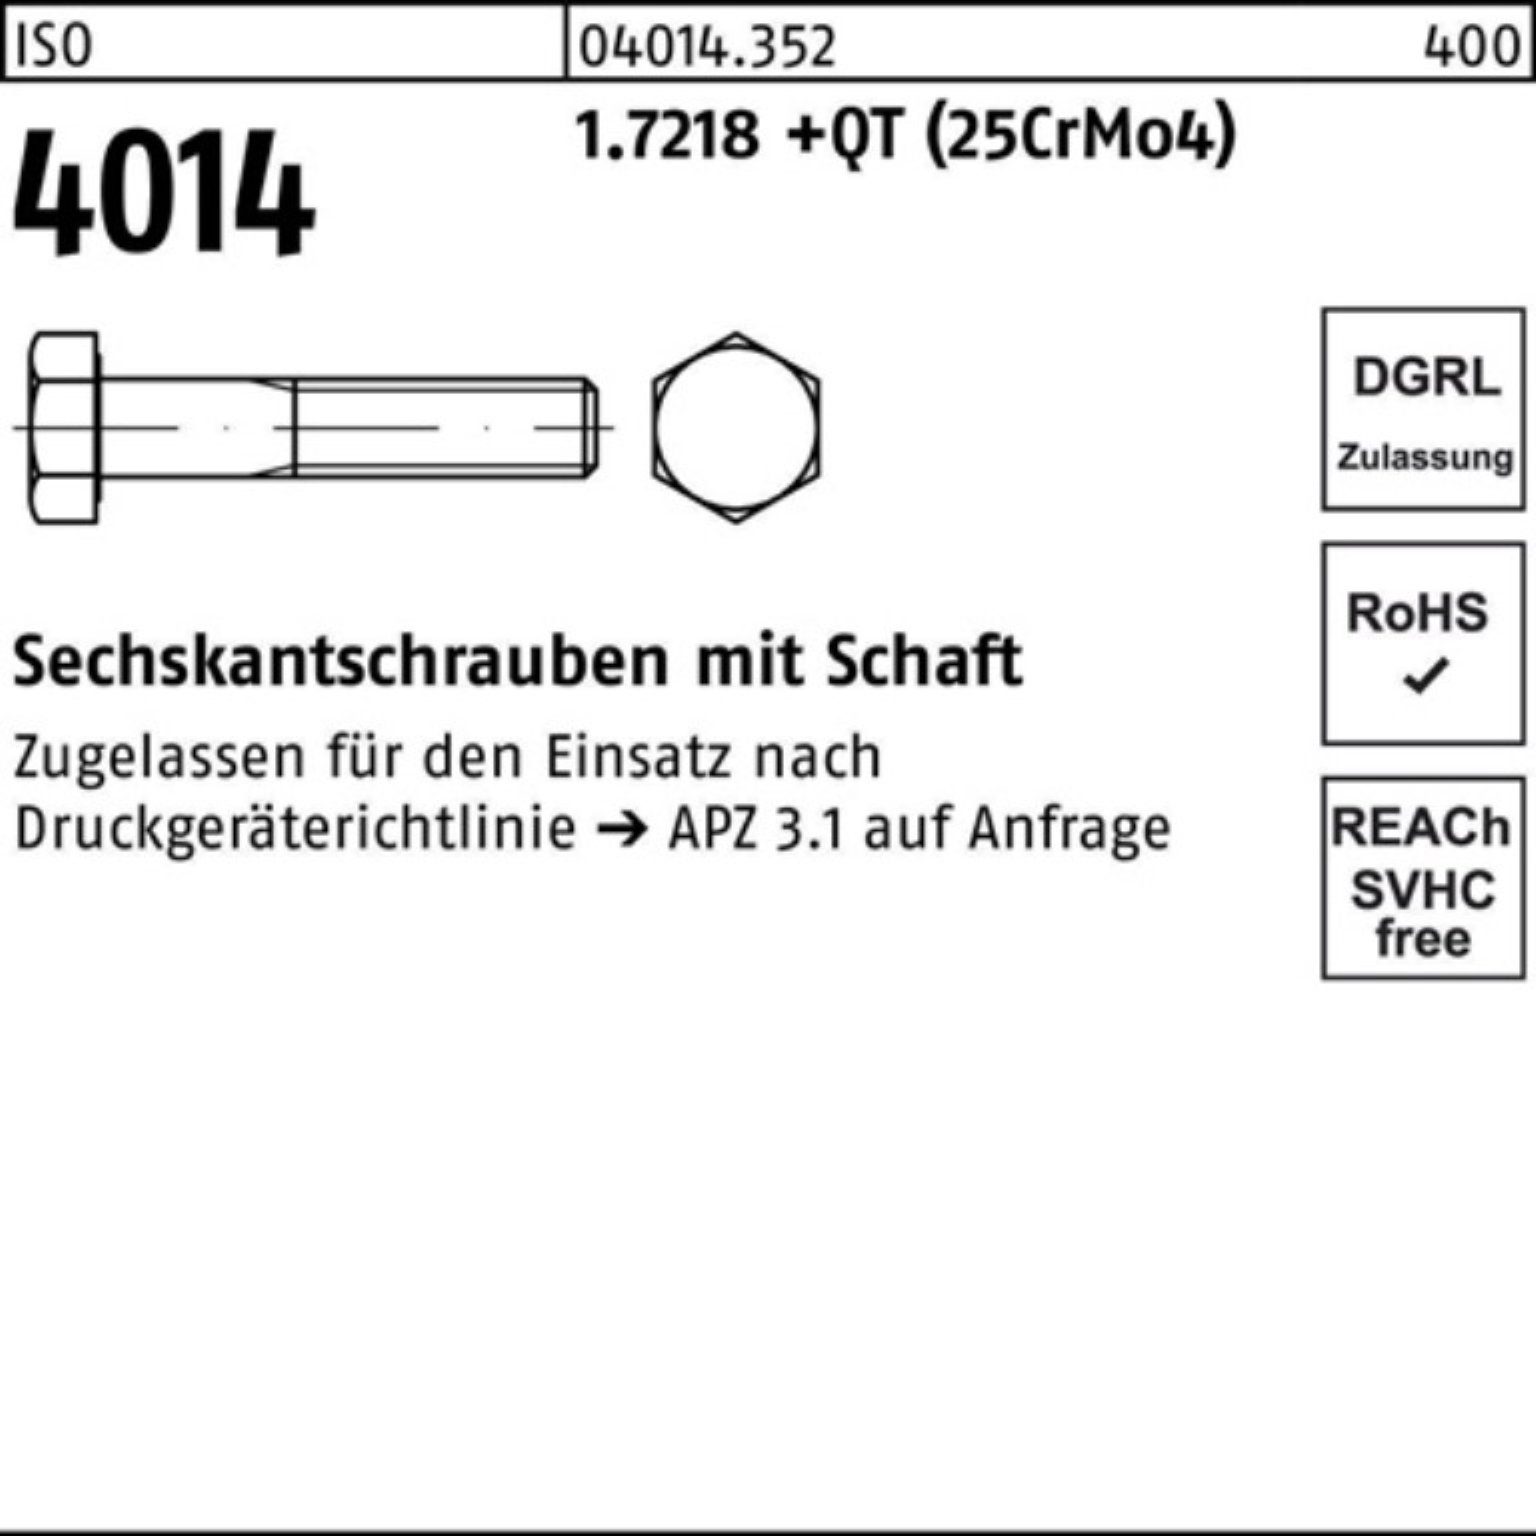 Bufab Sechskantschraube +QT Pack Sechskantschraube 190 (25Cr ISO 100er 1.7218 Schaft M30x 4014